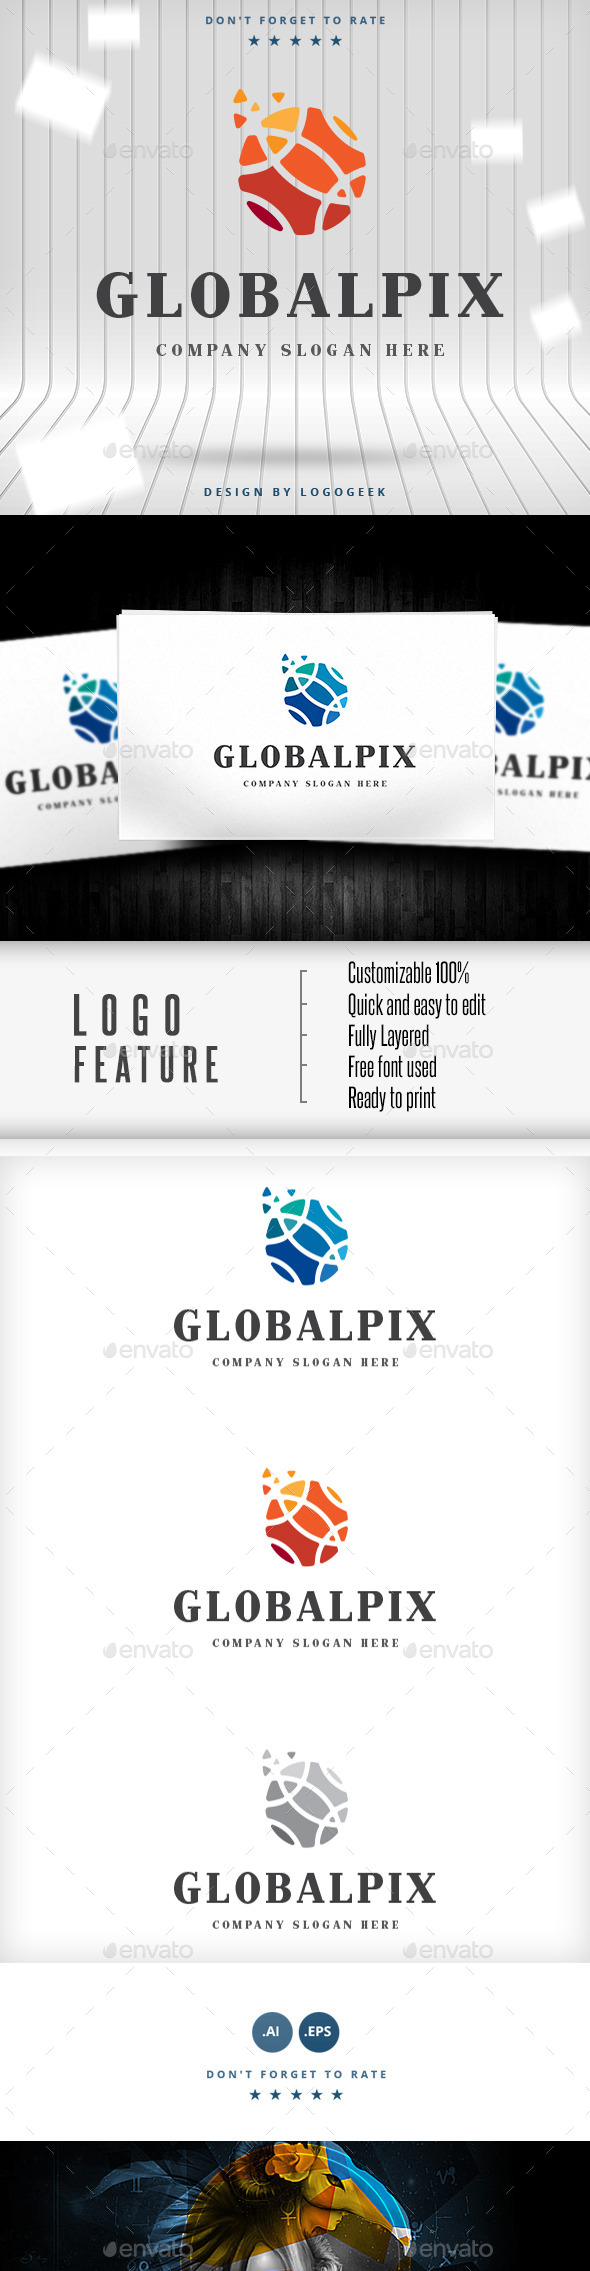 Global Pix Logo